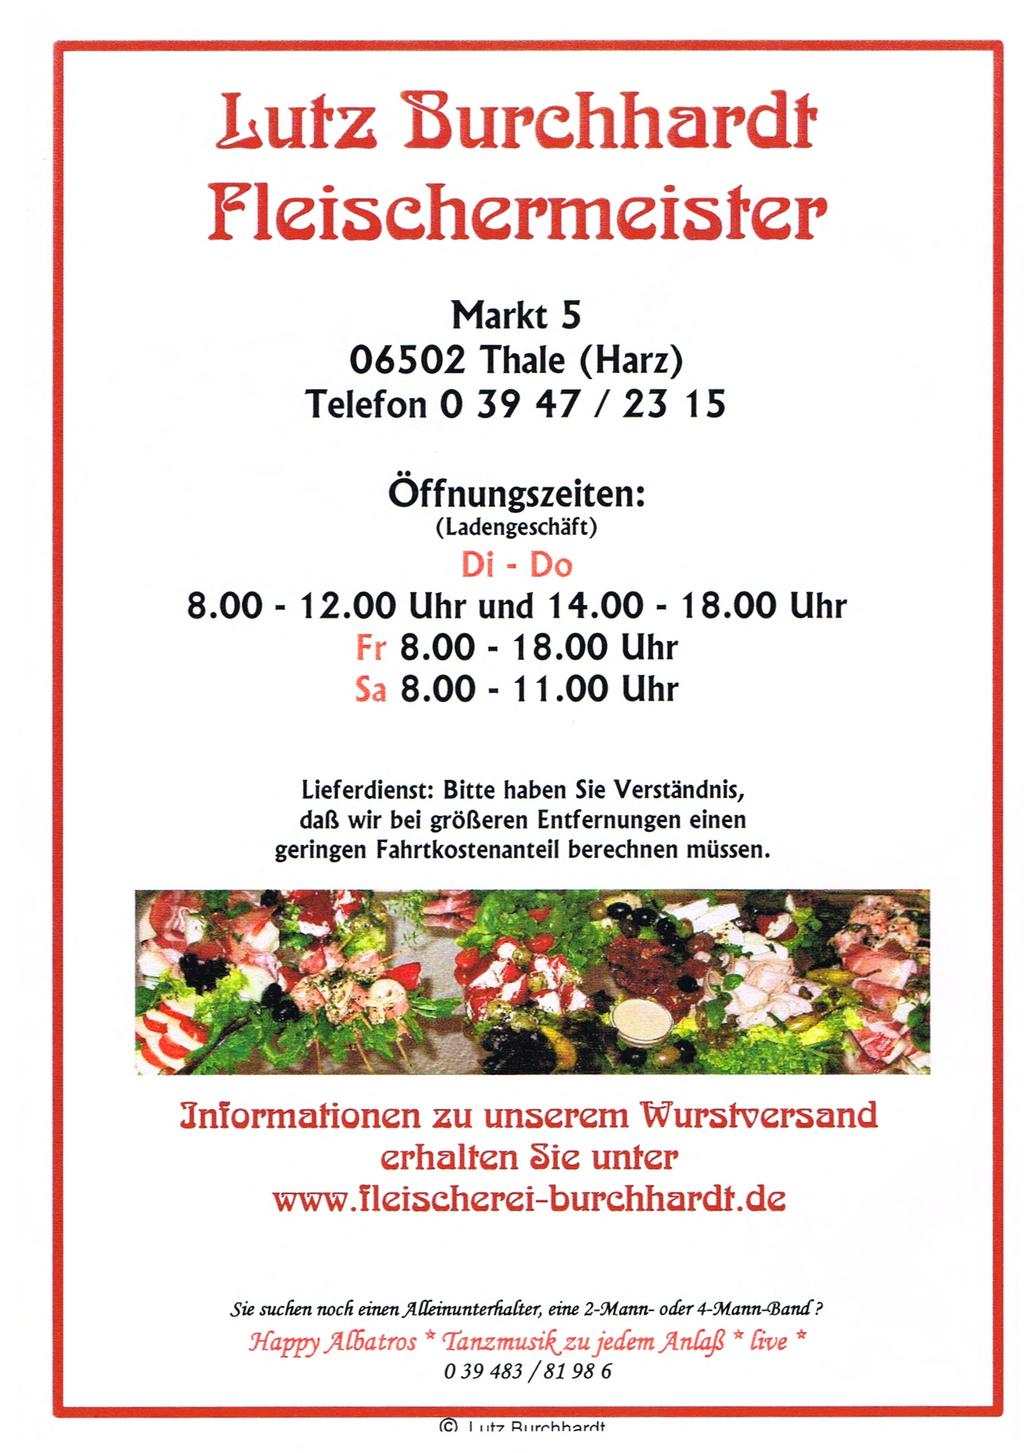 Lutz burchhardt Fleiächcrmeiäter Markt 5 06502 Thale (Harz) Telefon 0 39 47 / 23 15 Öffnungszeiten: (Ladengeschäft) Di - D 8.00-12.00 Uhr und 14.00-18.00 Uhr rr 8.00-18.00 Uhr Sa 8.00-11.